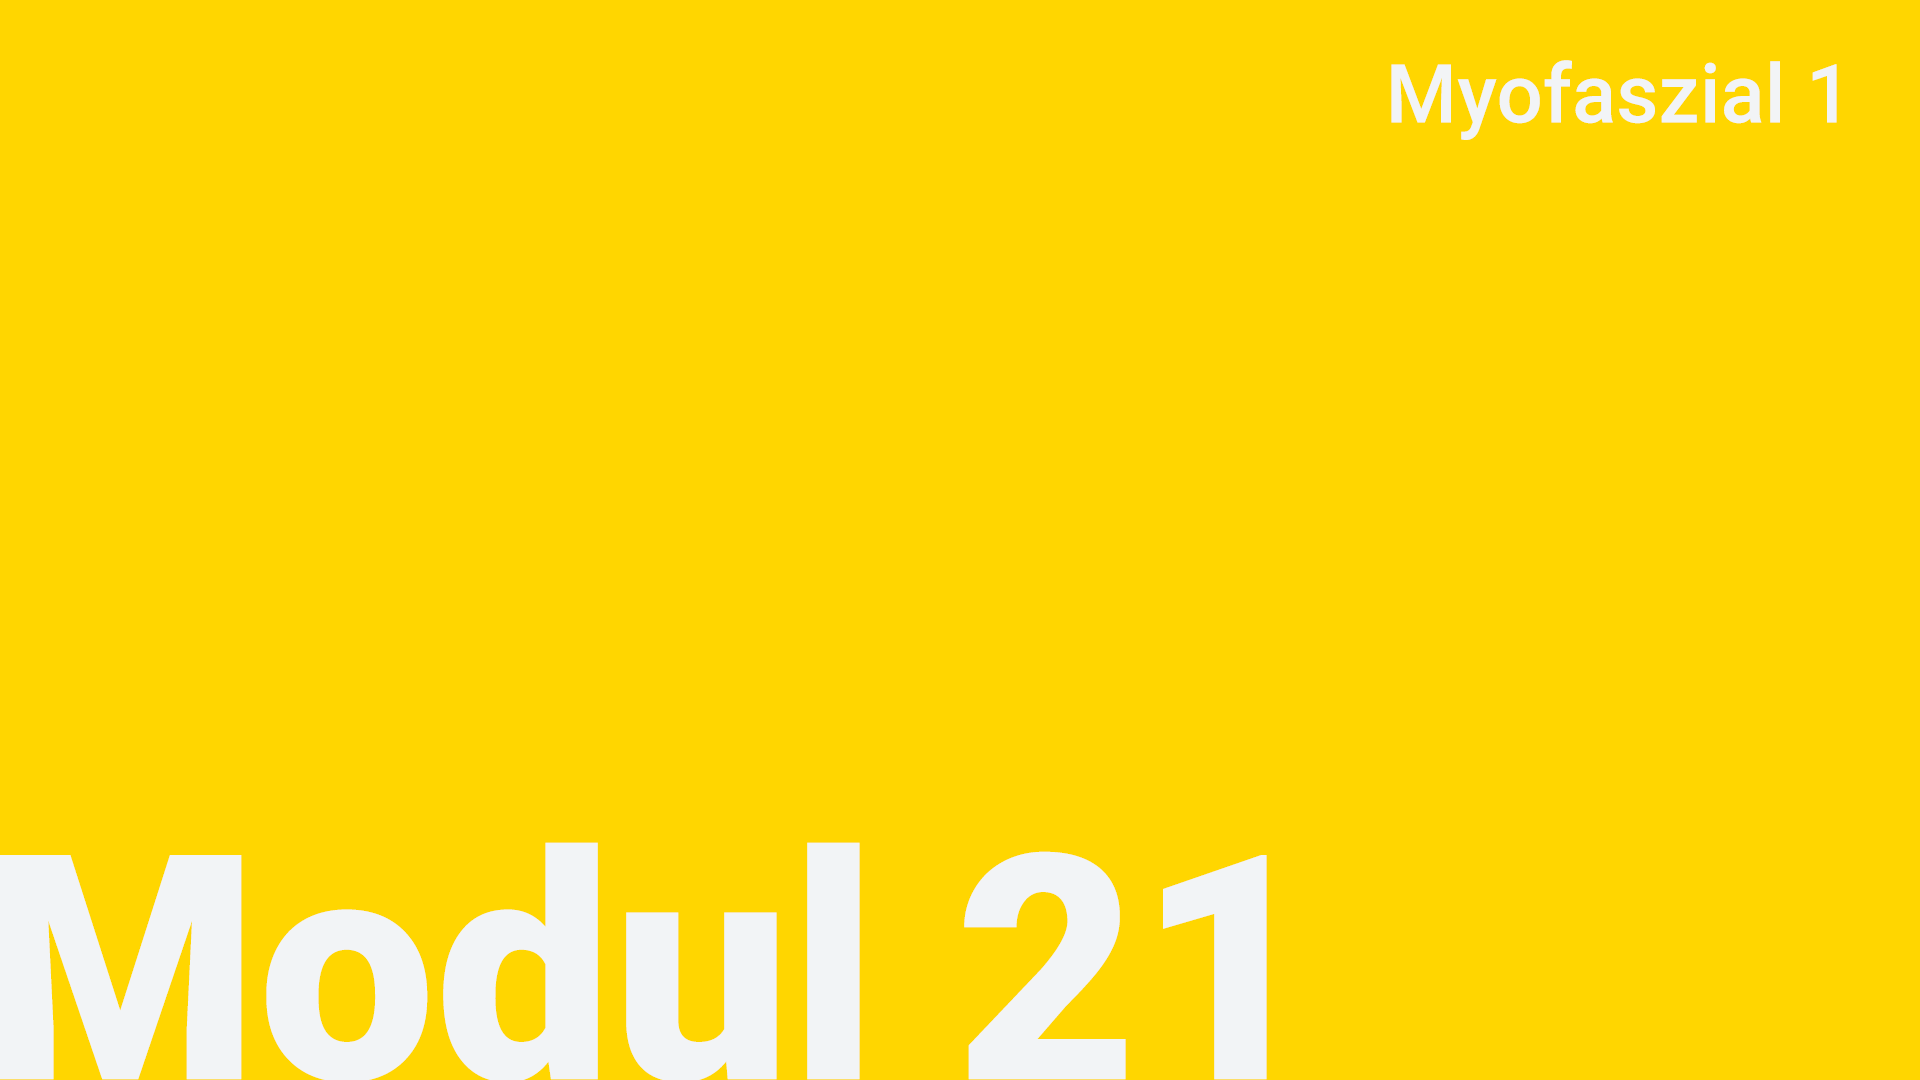 Modul 21 - Myofaszial 1